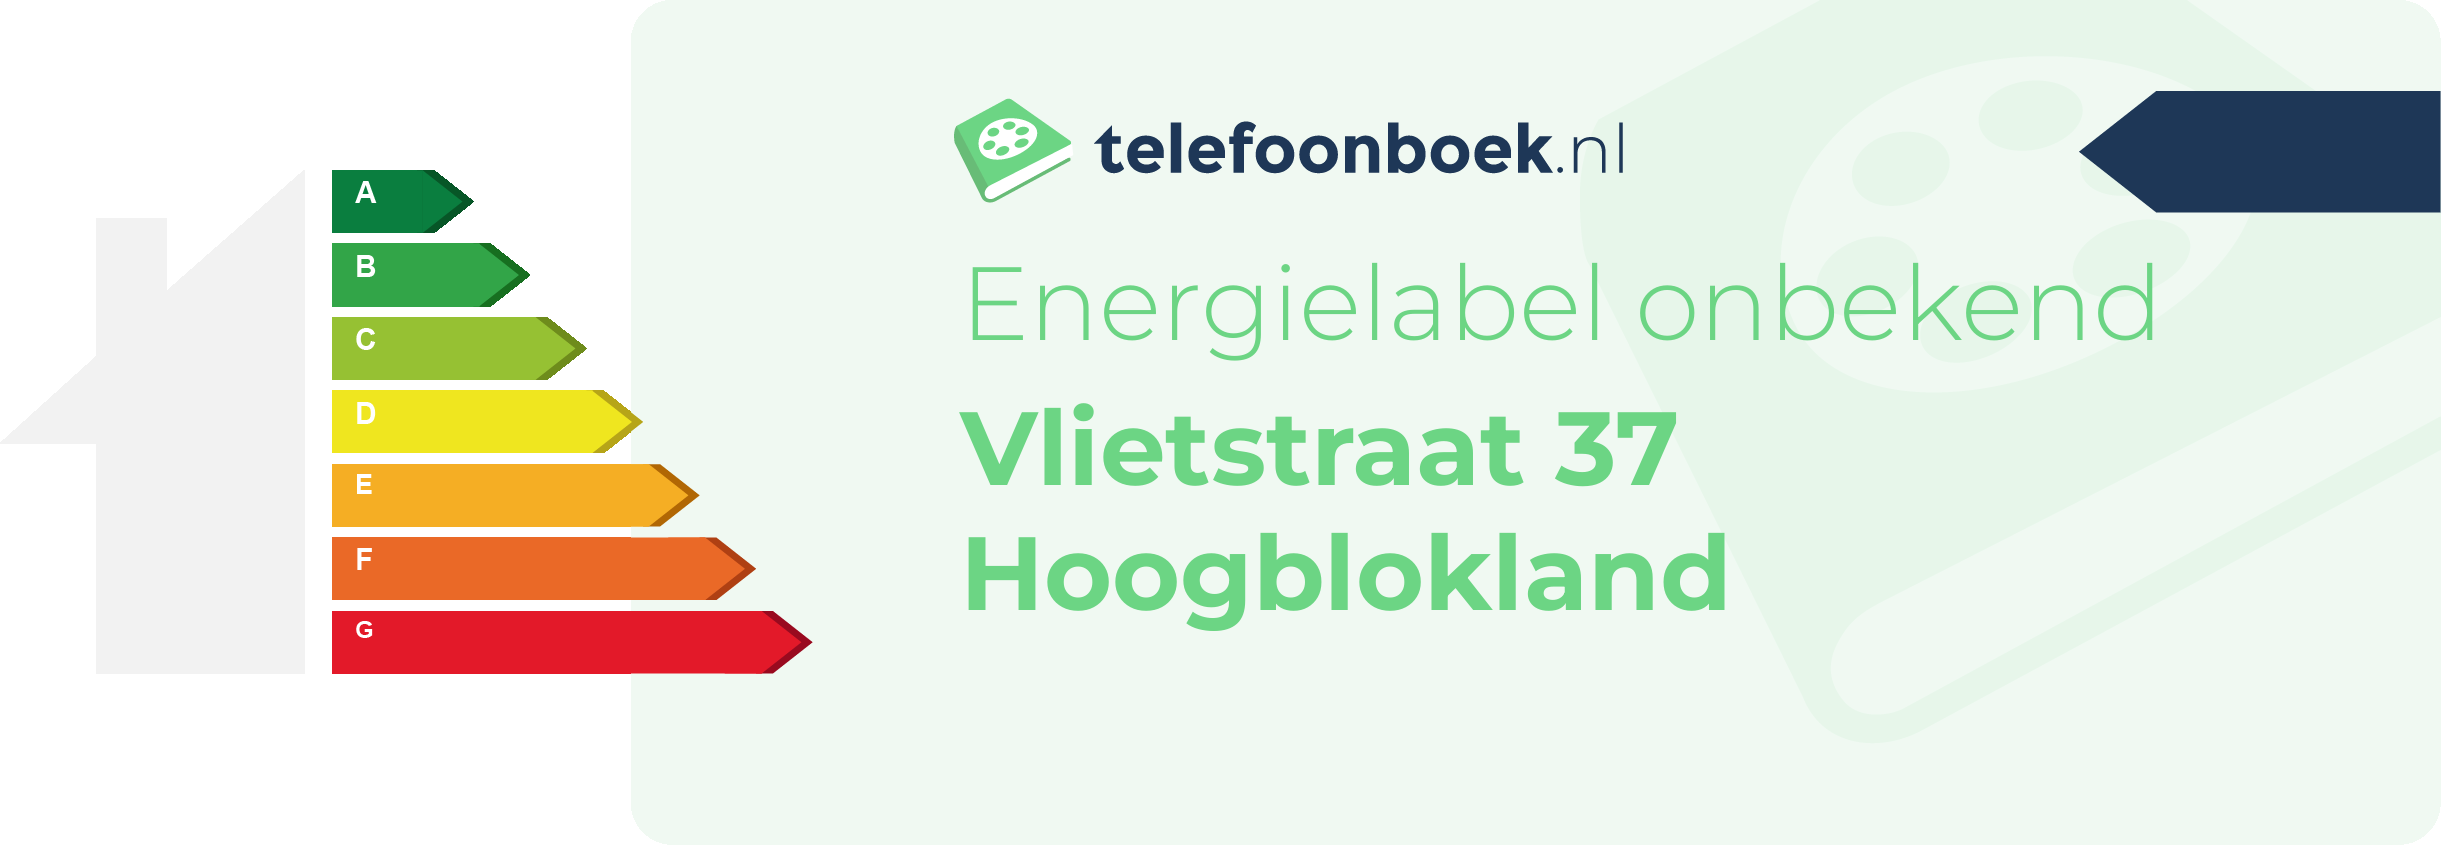 Energielabel Vlietstraat 37 Hoogblokland